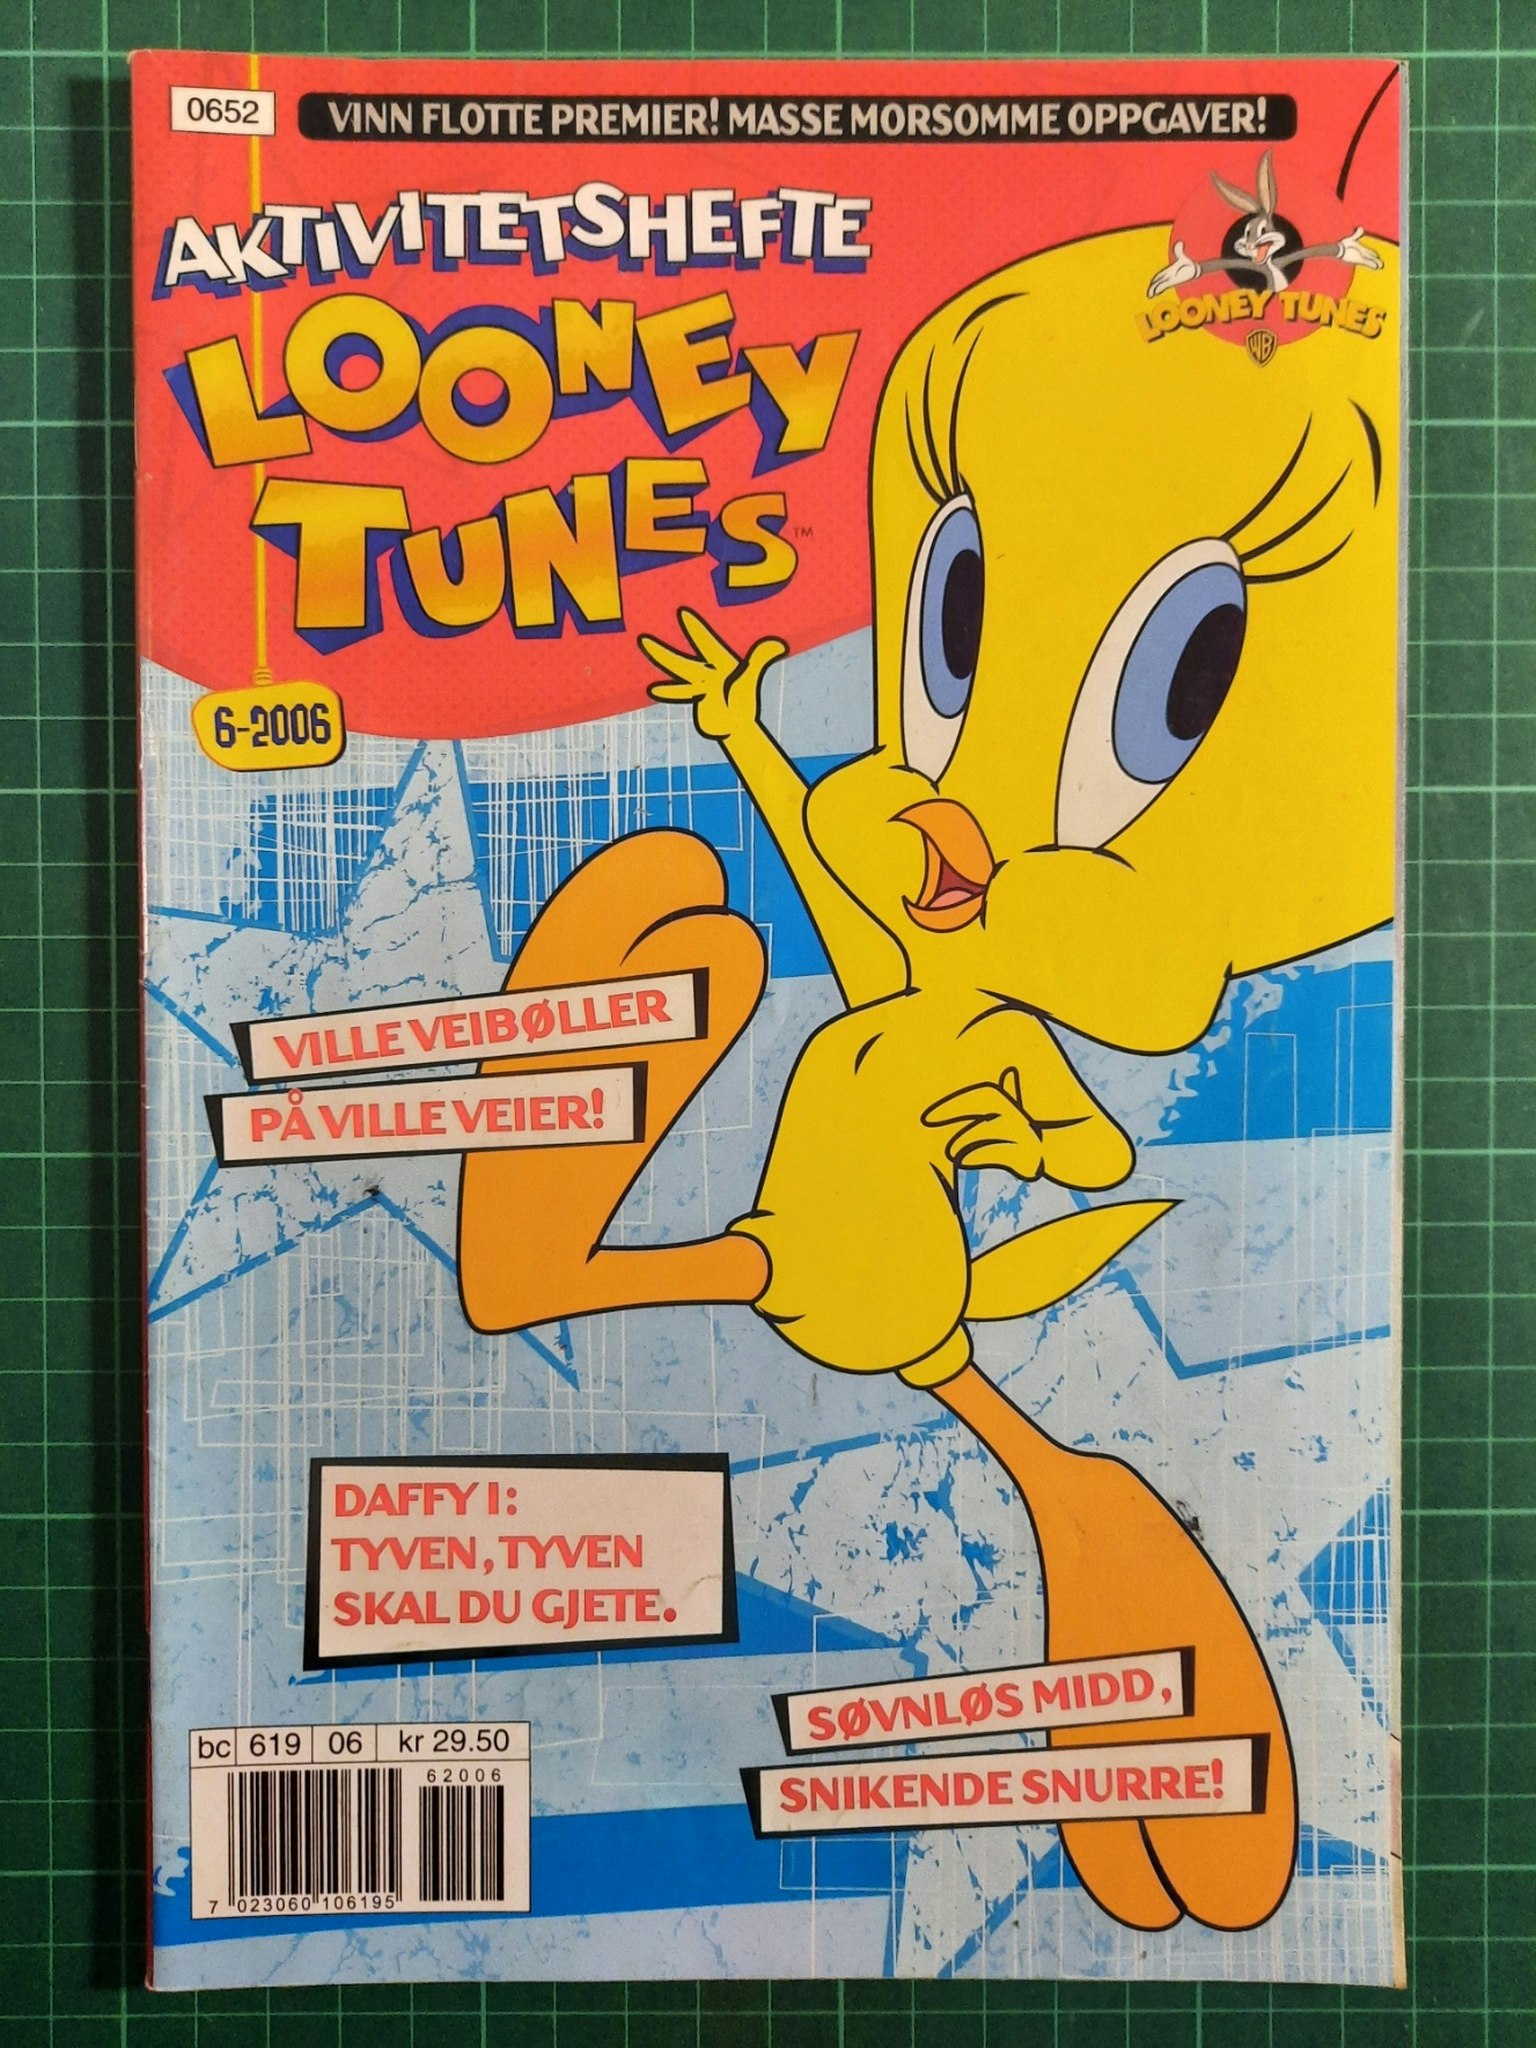 Looney Tunes aktivitetshefte 2006 - 06